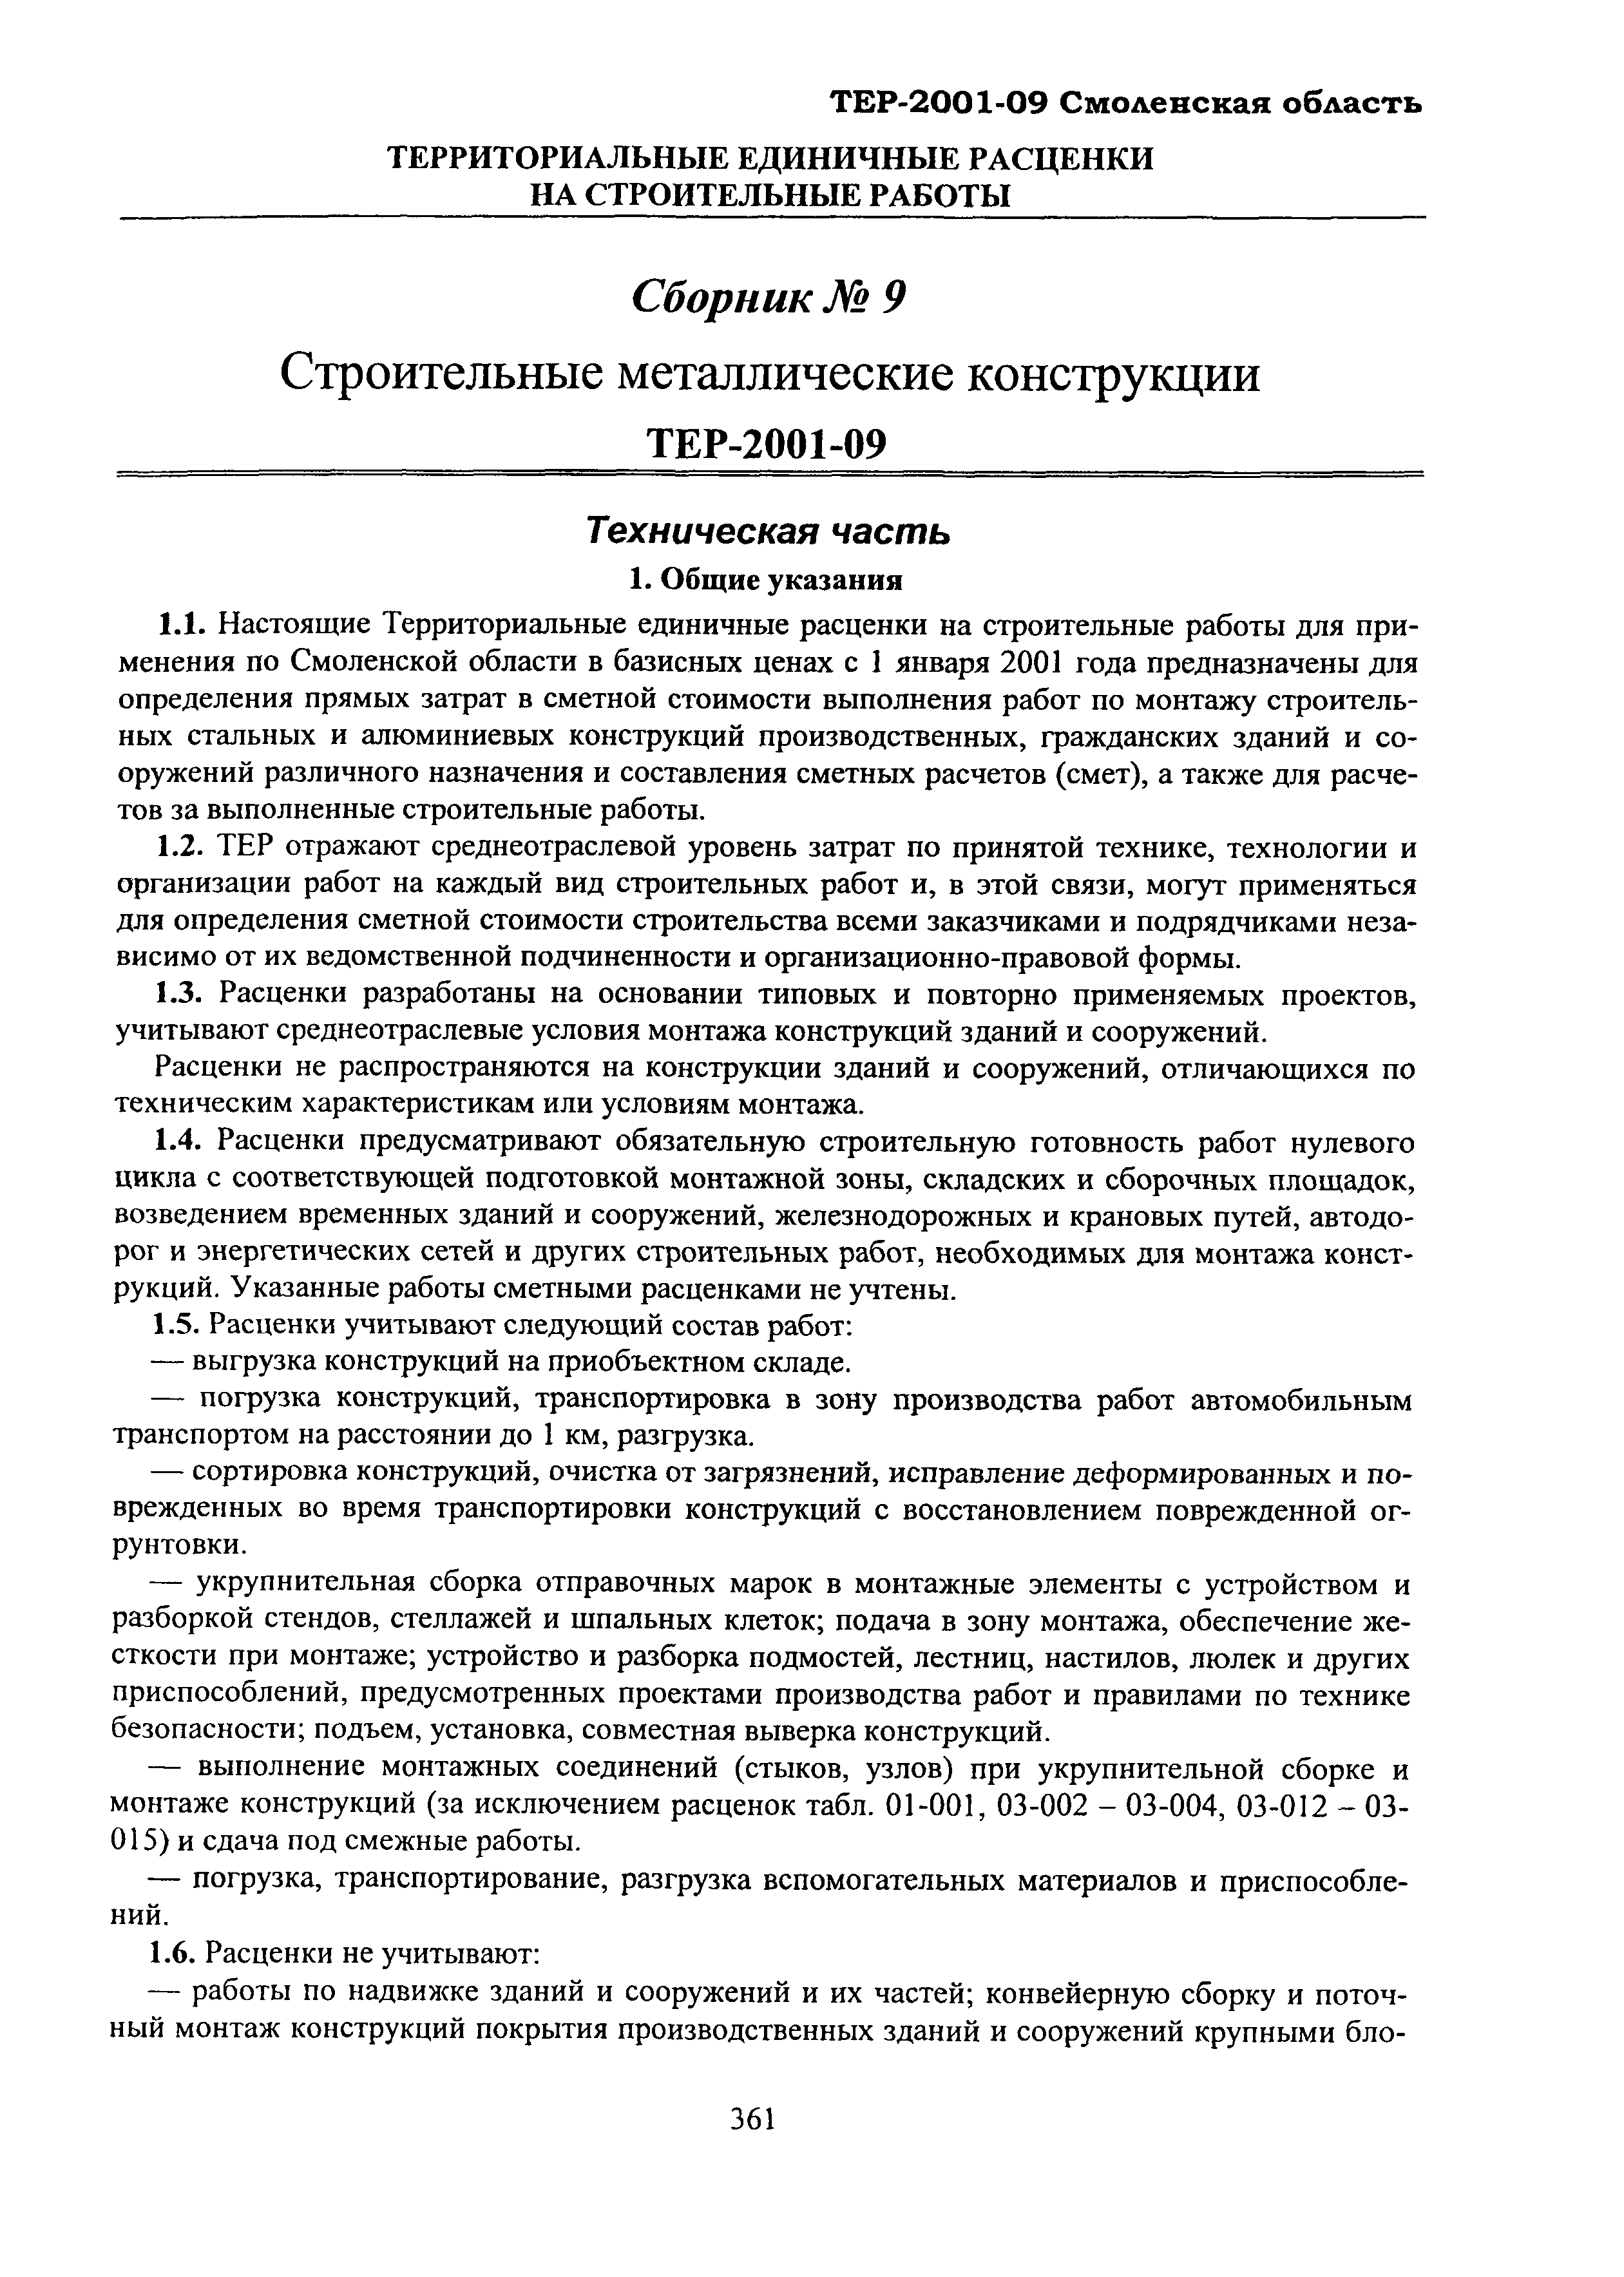 ТЕР Смоленской обл. 2001-09